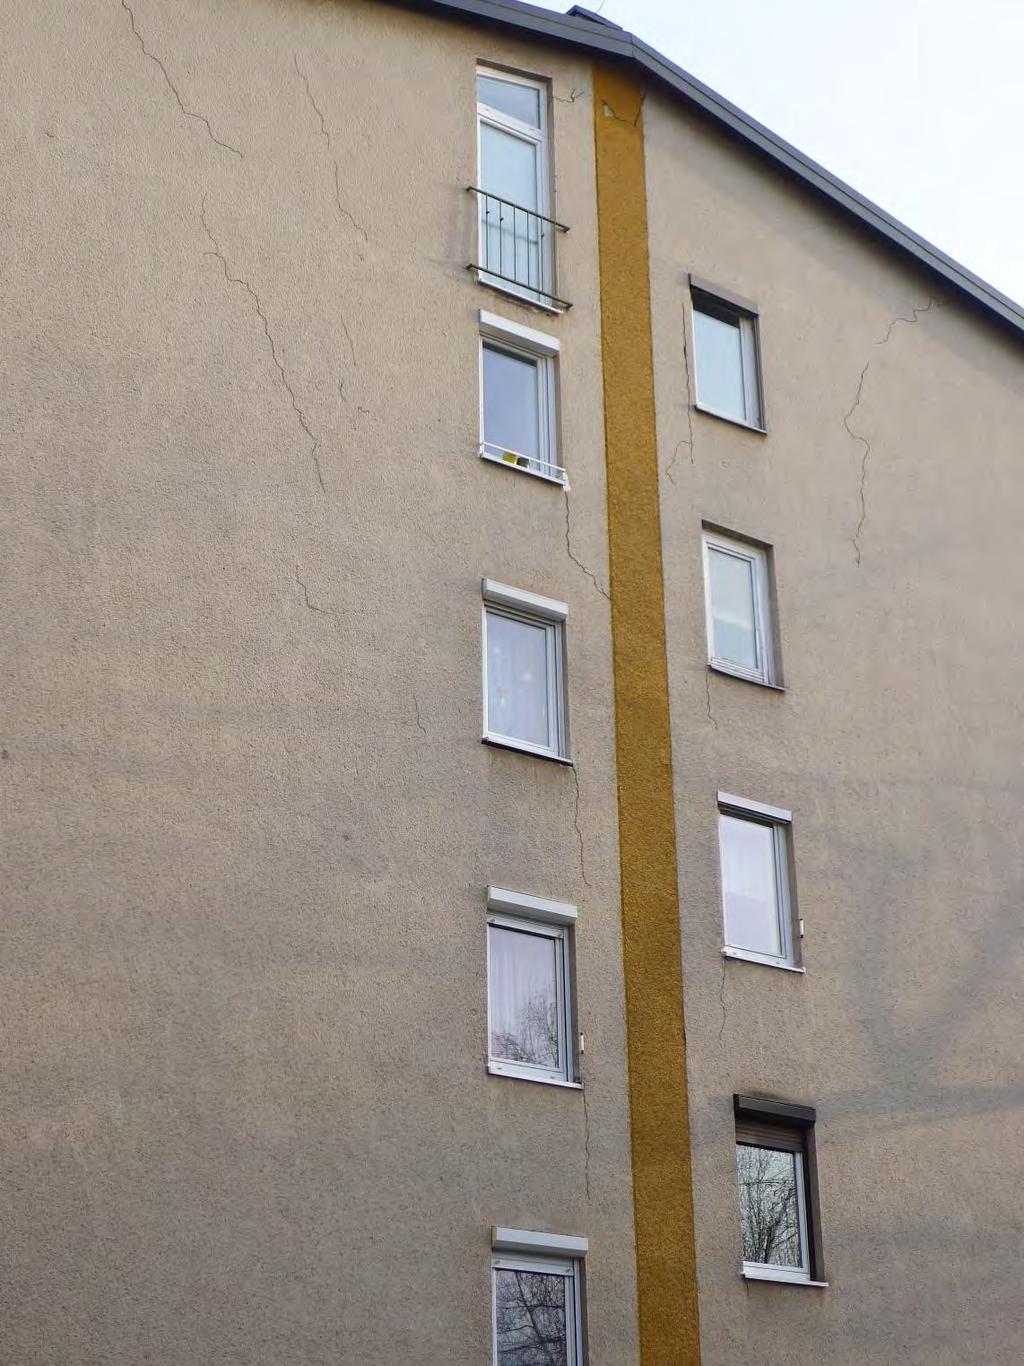 Razpoke na fasadi bloka na Prulah Za zakritje teh razpok s toplotno izolacijo (brez